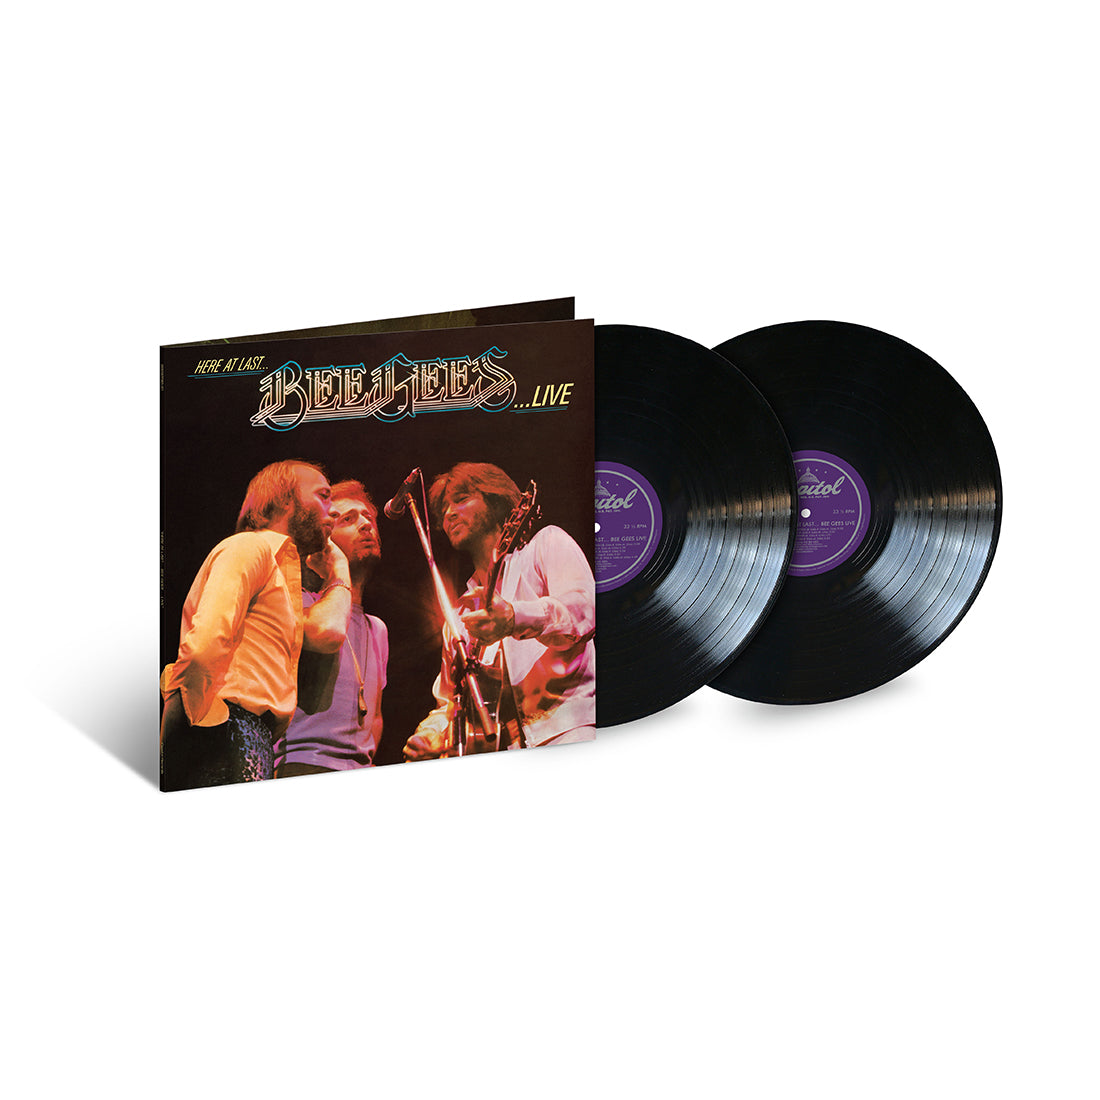 Bee Gees - Here At Last… Bee Gees Live: Vinyl 2LP